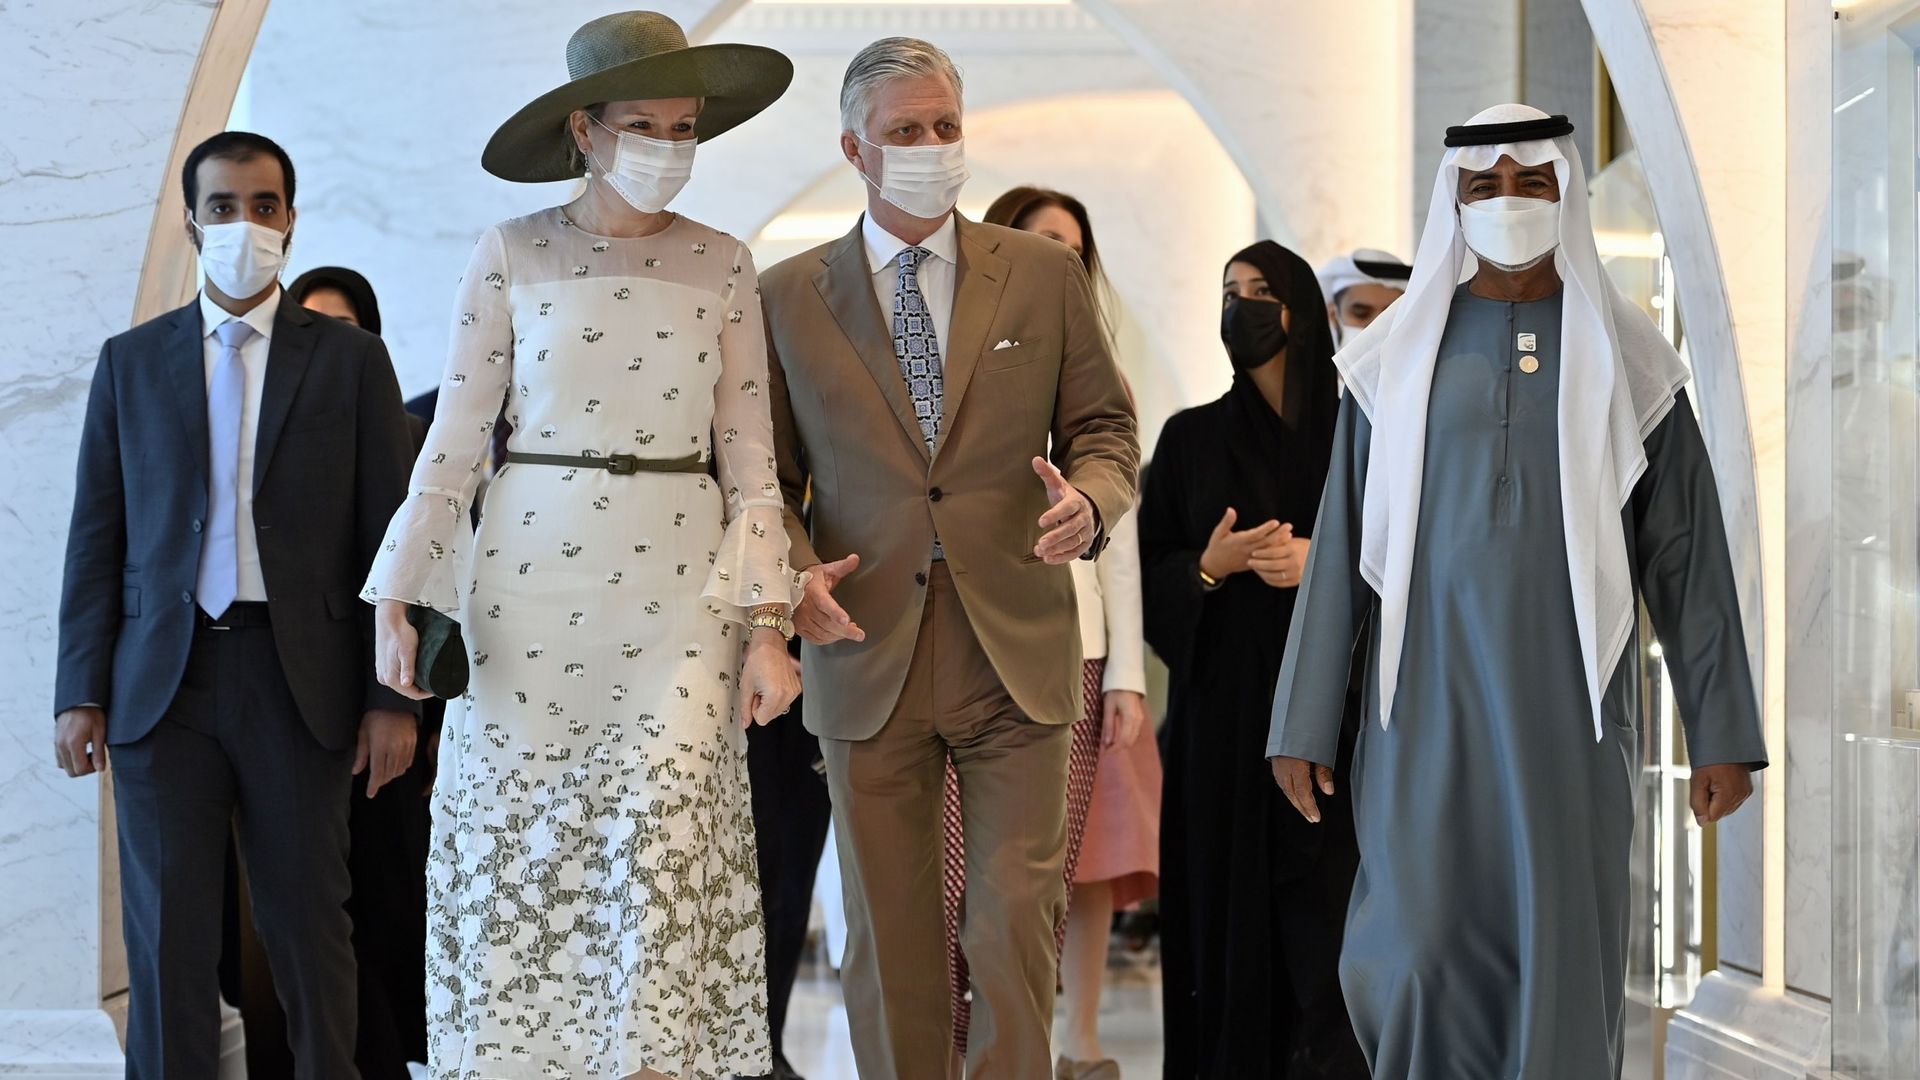 Philippe de Belgique photographié lors d’une visite à l’Expo 2020 de Dubaï le dernier jour d’une visite officielle des Royaux belges au Sultanat d’Oman et aux Emirats Arabes Unis, samedi 05 février 2022.